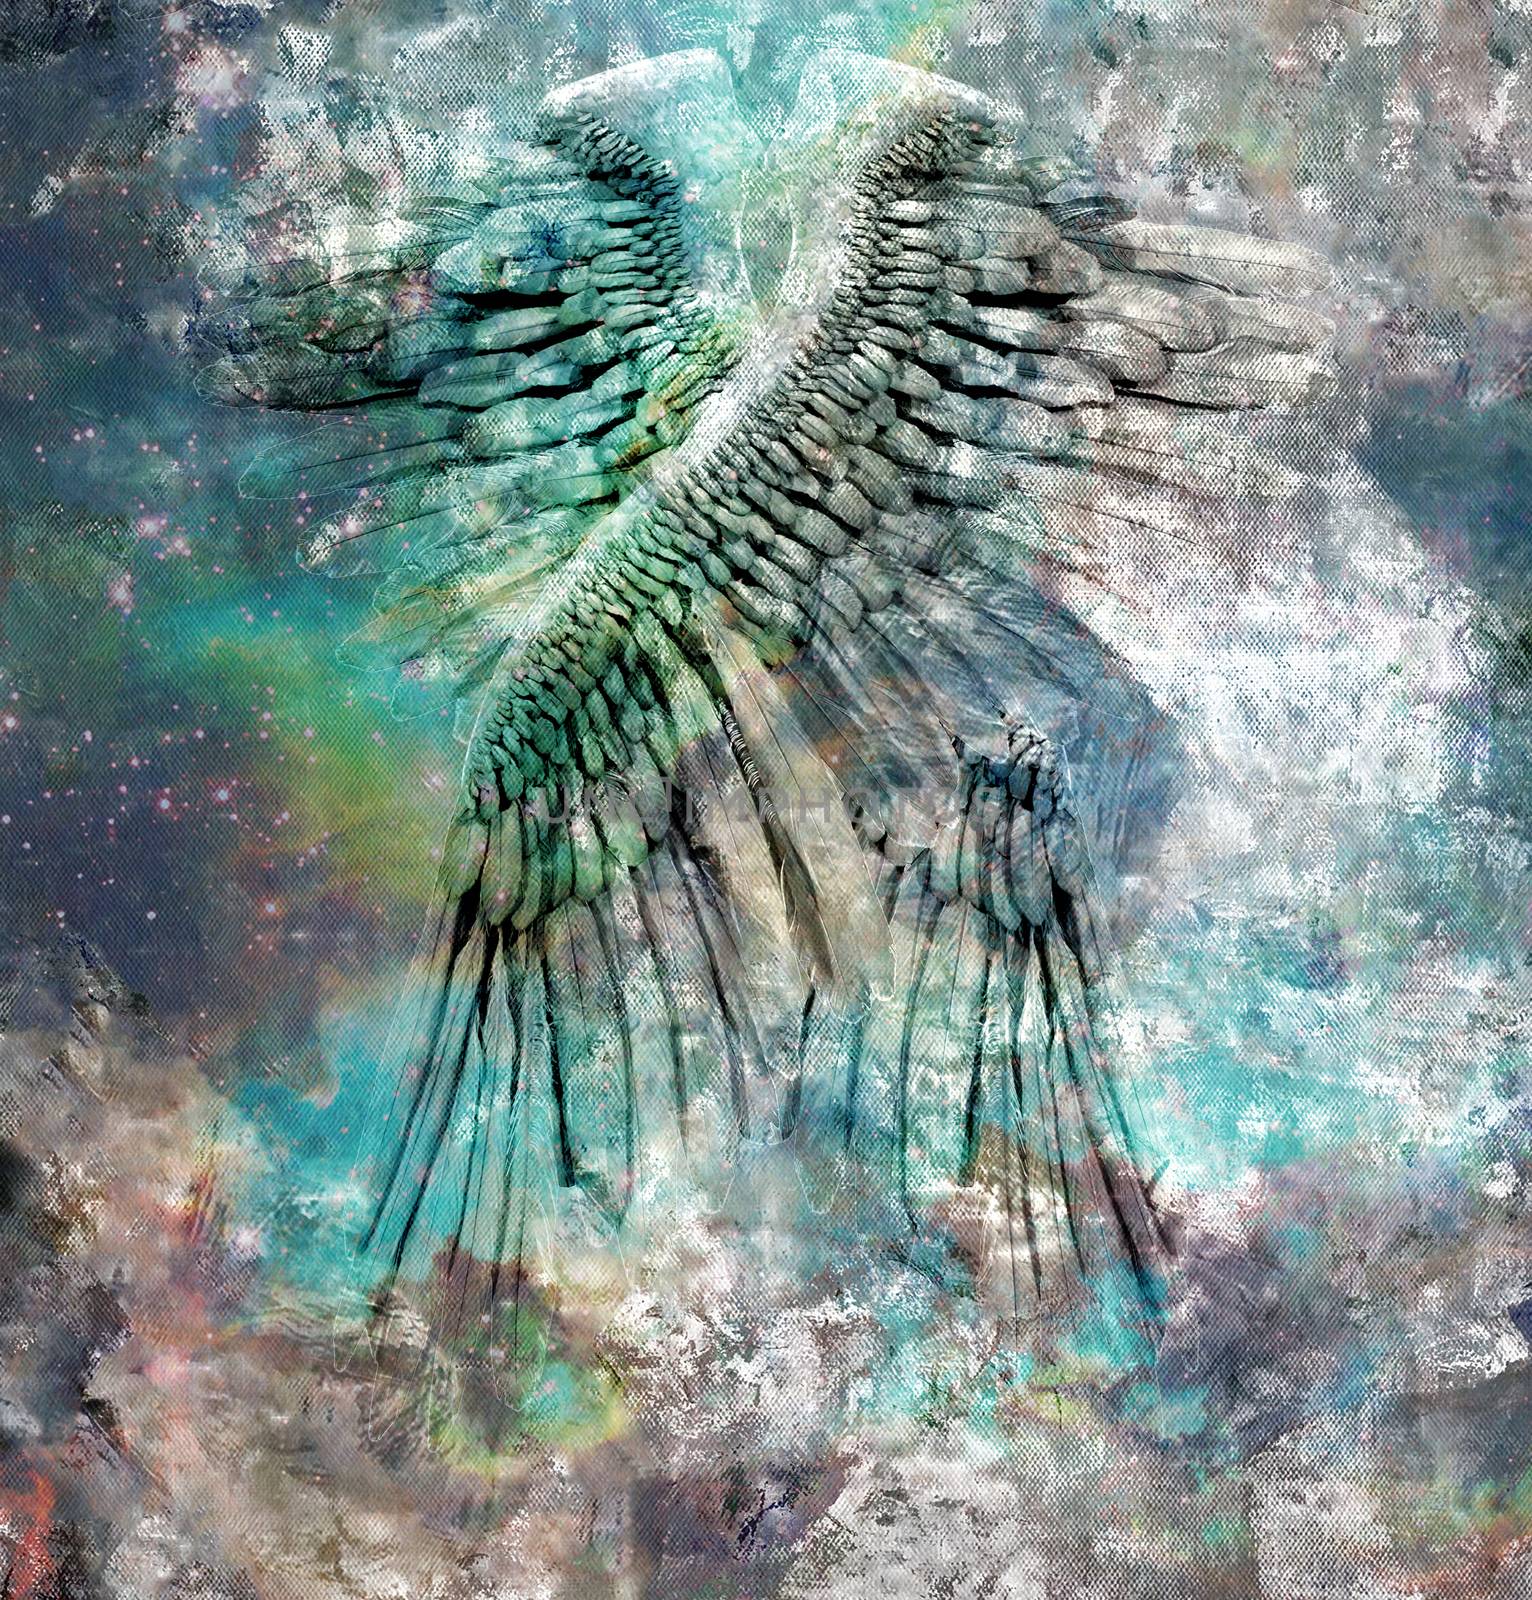 Angel wings by applesstock